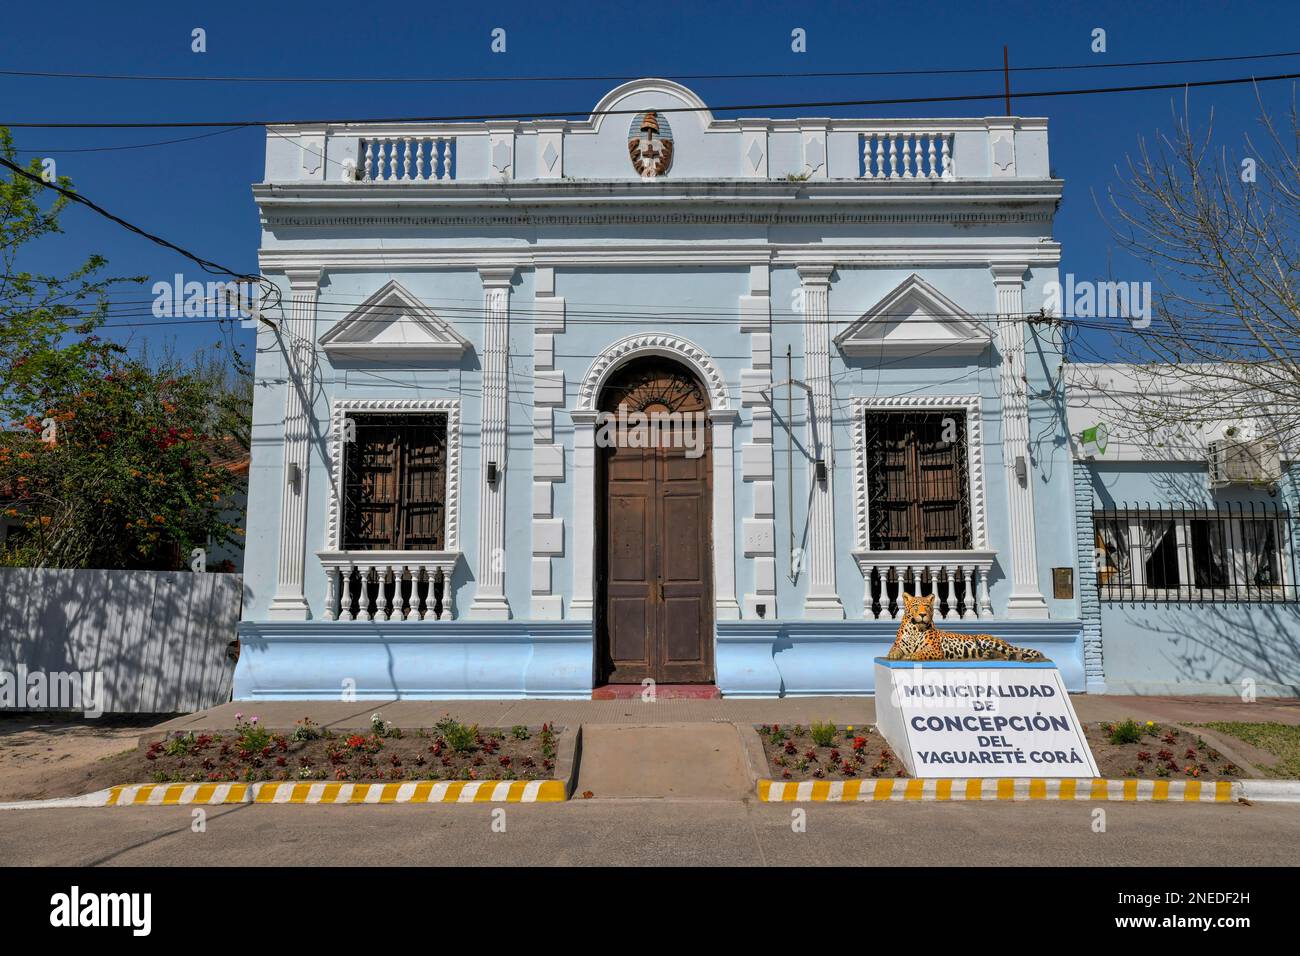 City Hall of Concepcion del Yaguarete Cora, Jaguar, Corrientes Province, Argentina Stock Photo